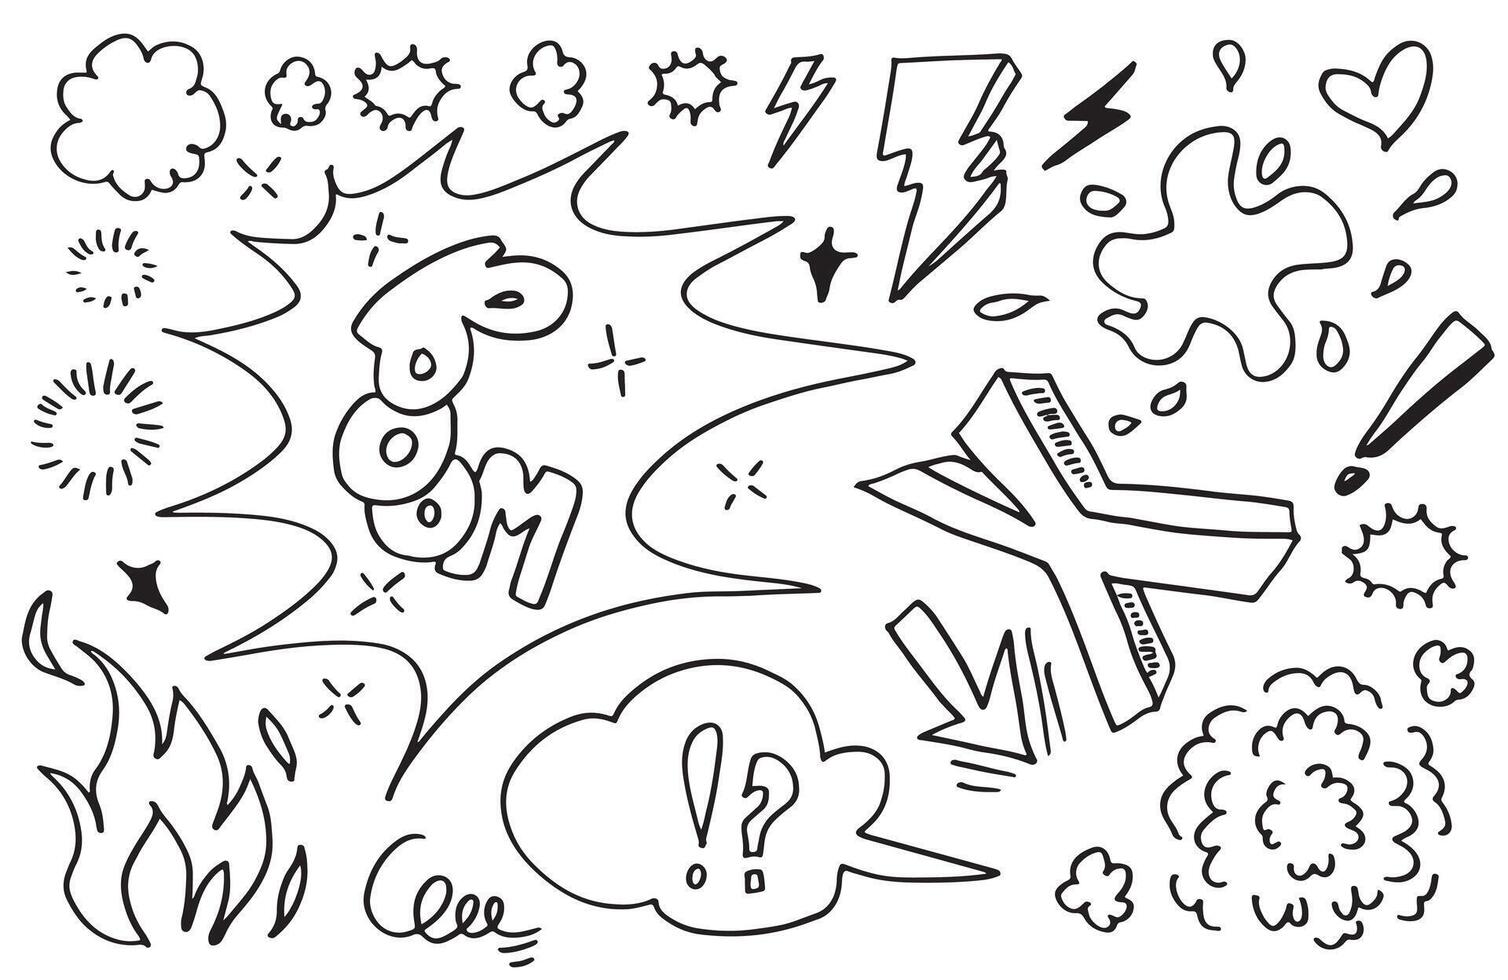 griffonnages comiques dessinés à la main isolés sur fond blanc. illustration vectorielle. vecteur